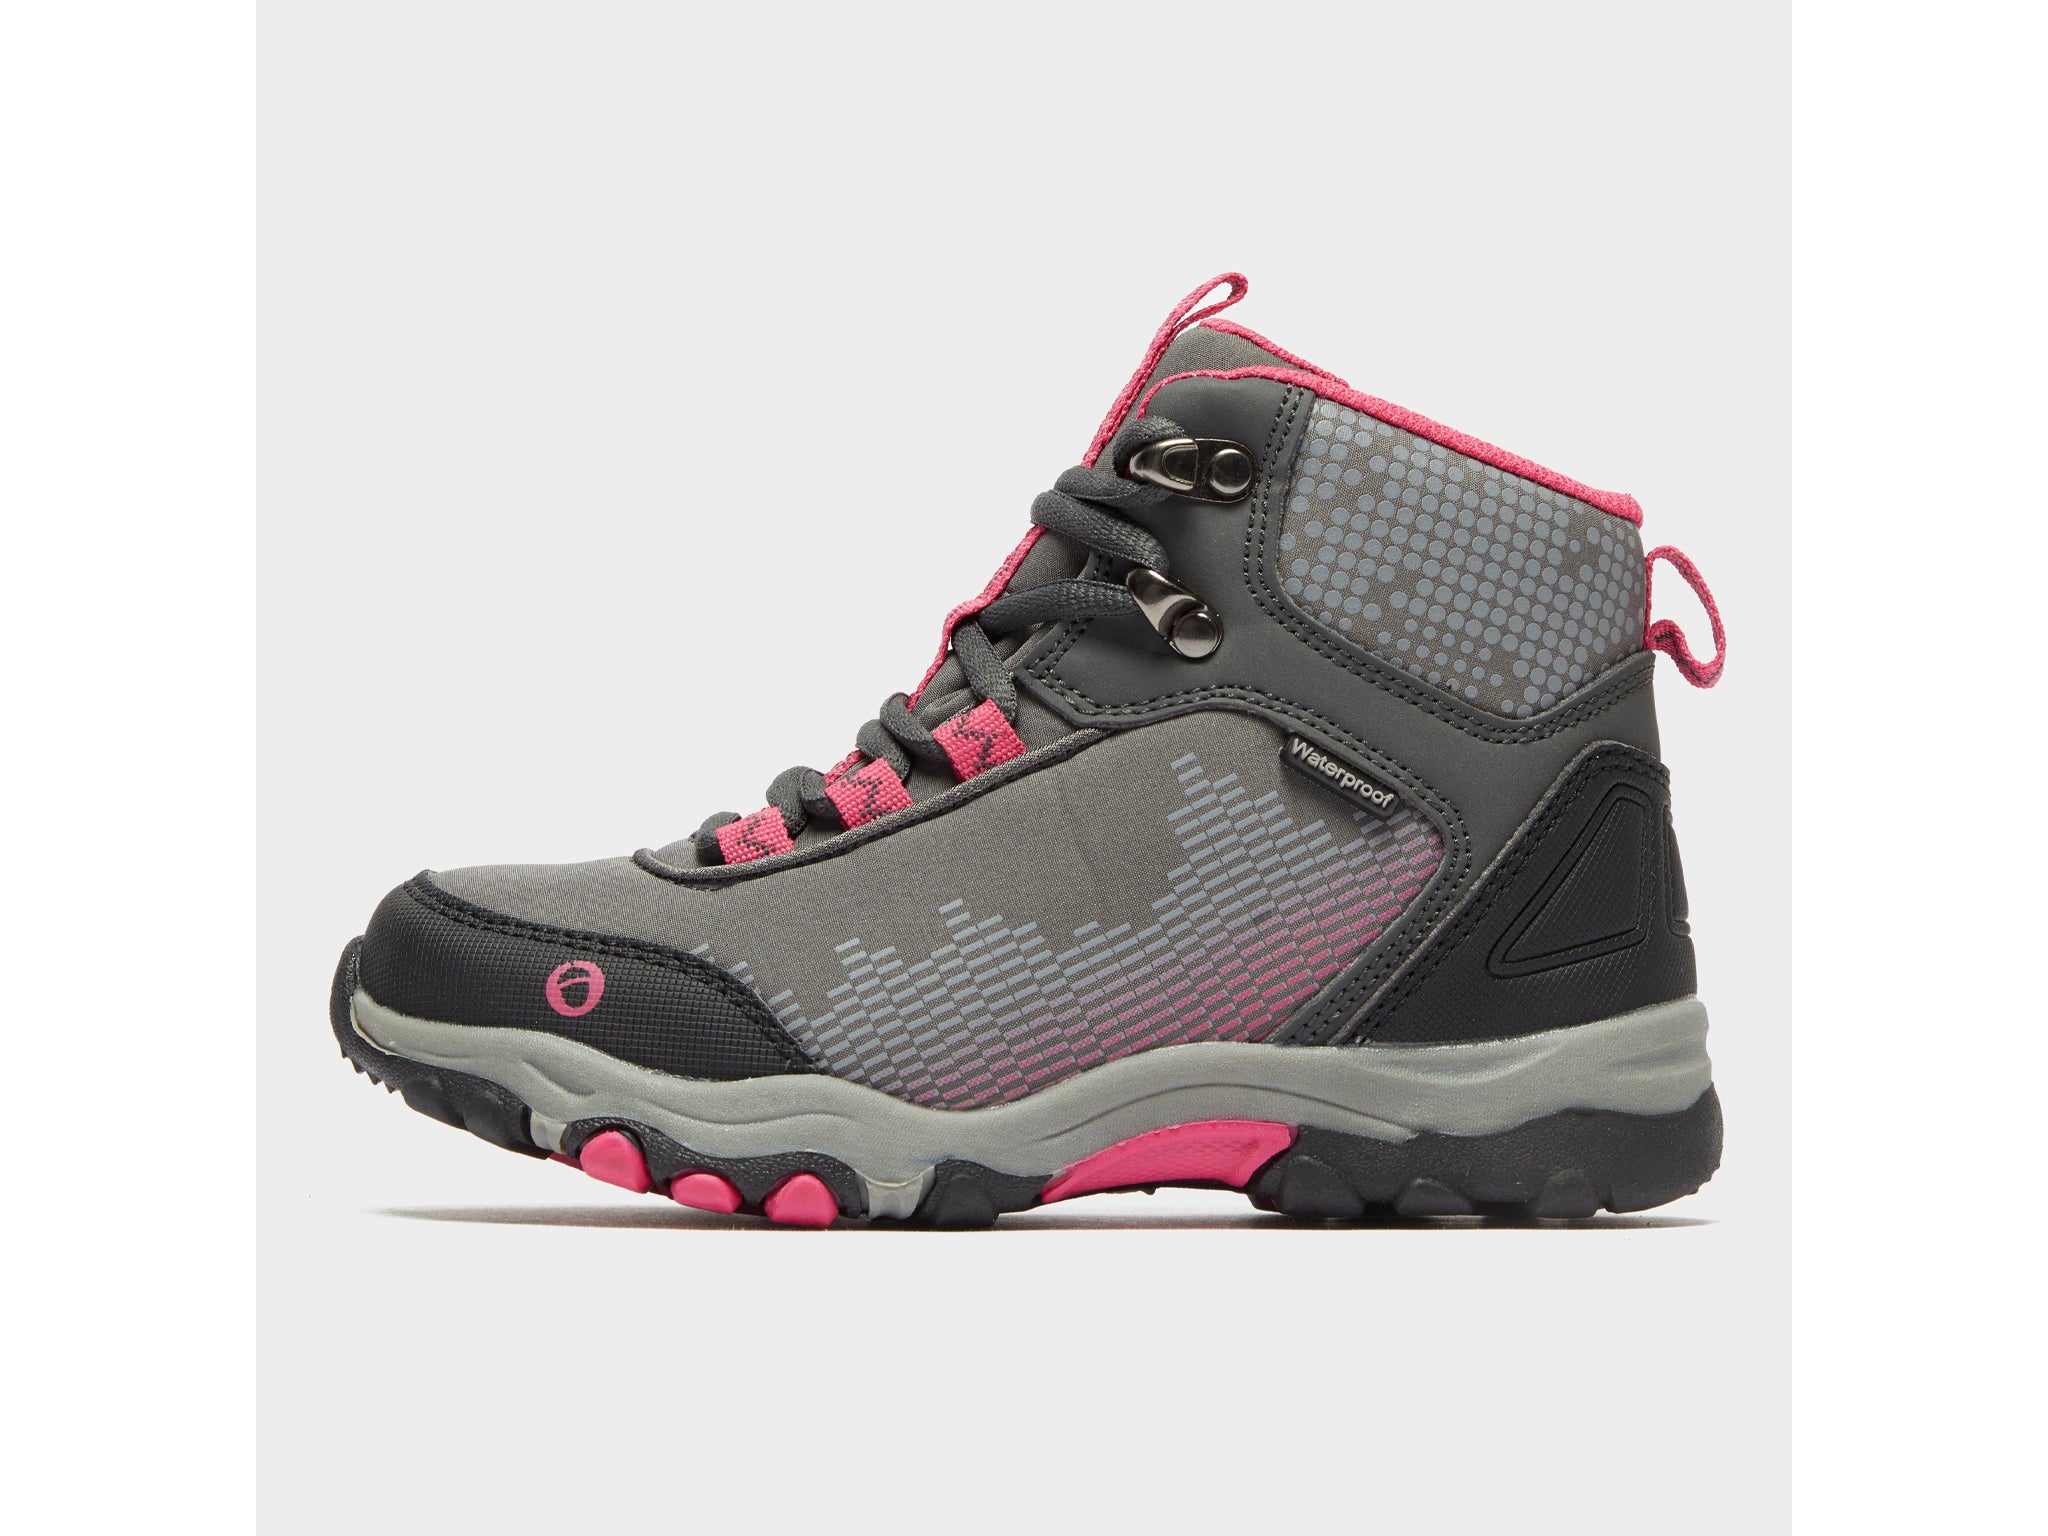 Kids Boys Branded Gelert Laced Leather Walking Boots Outdoor Footwear Size C10-2 